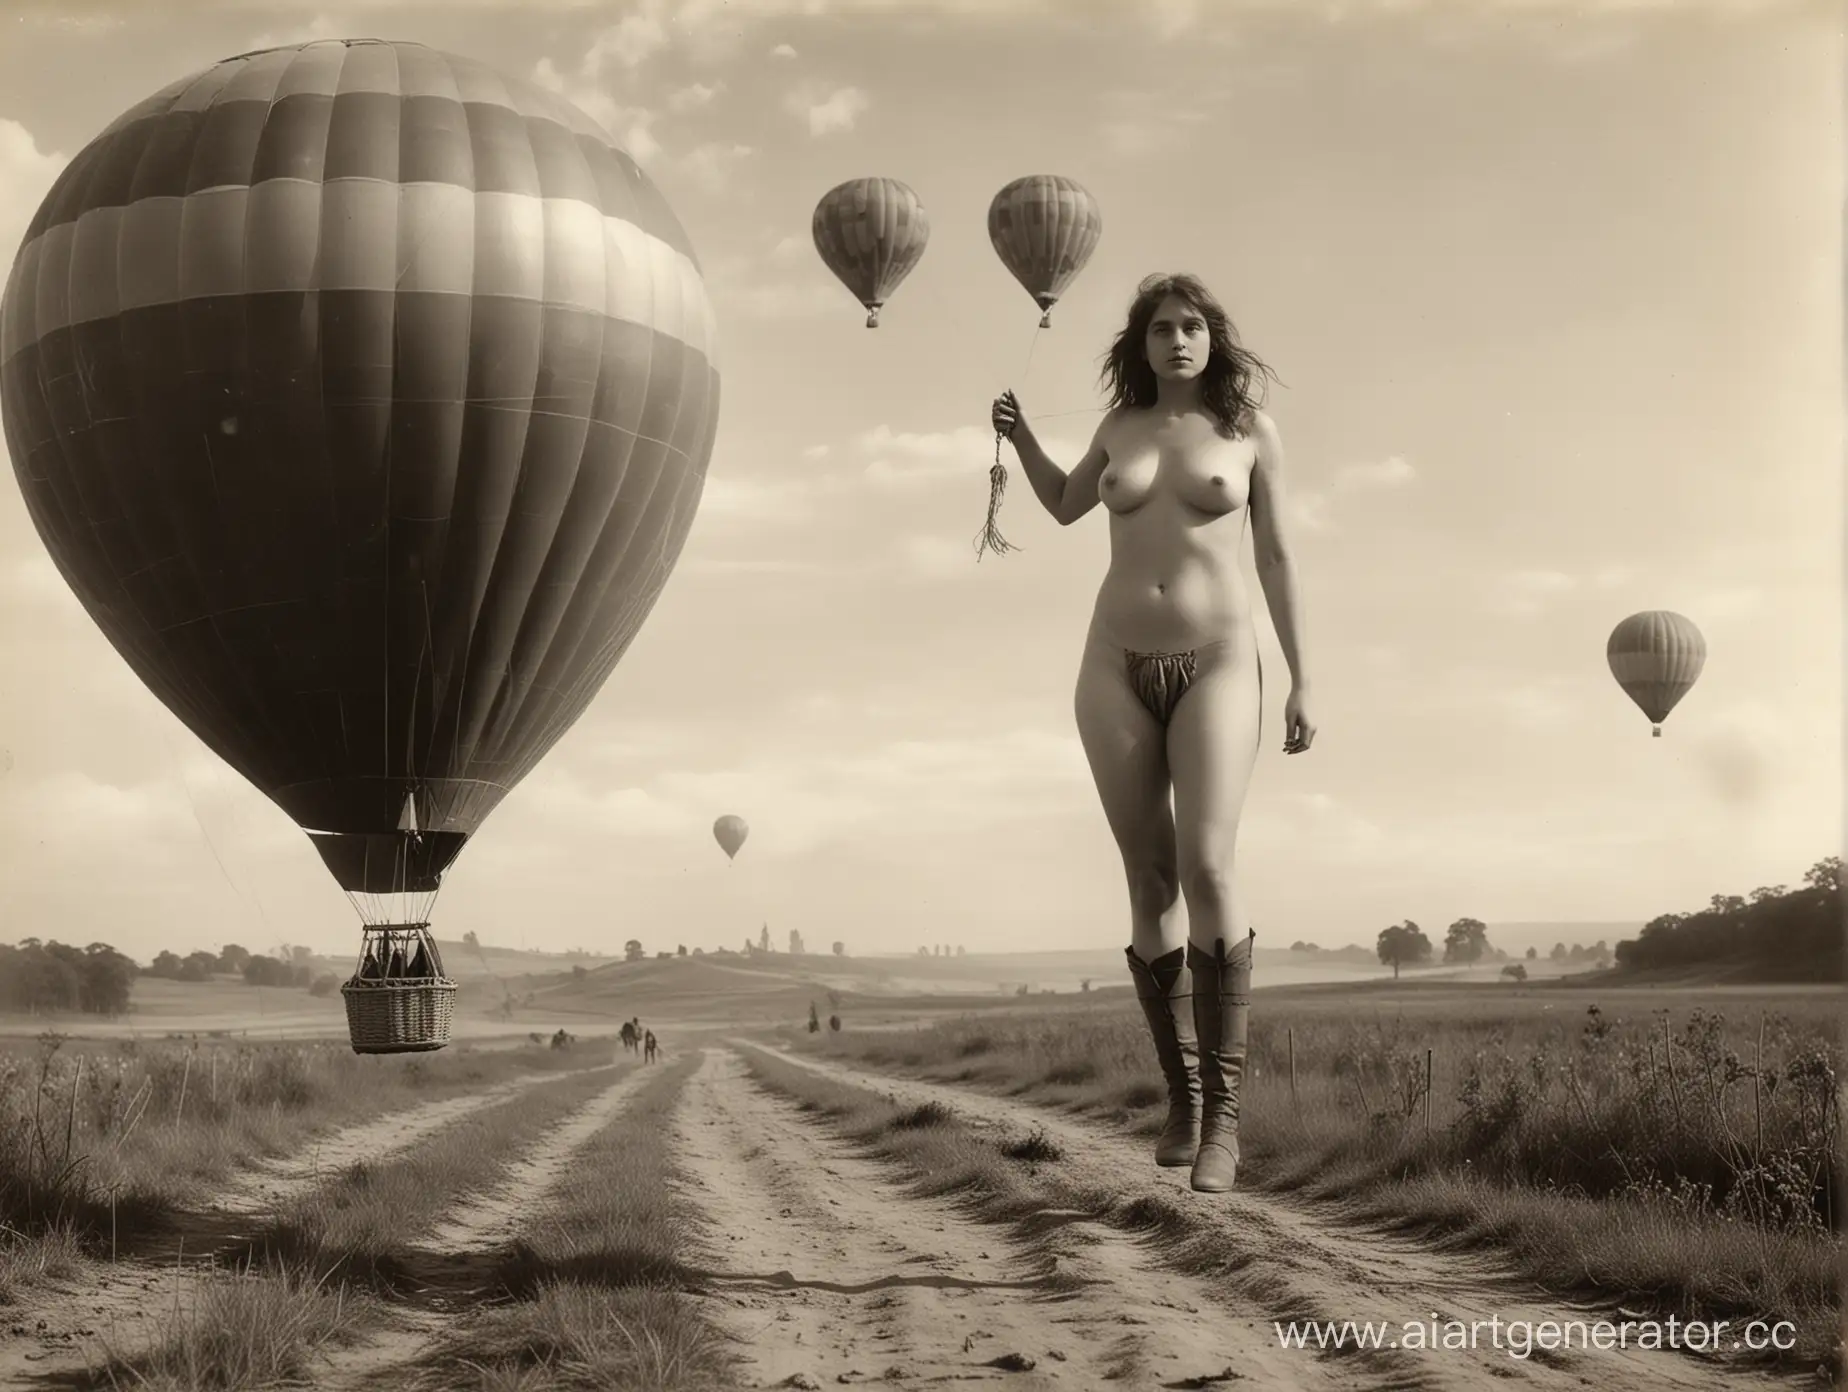 очень старая фотография полуобнажённой девушки на полях сражений первой мировой войны, в небе воздушный шар, рядом стоит средневековый рыцарь